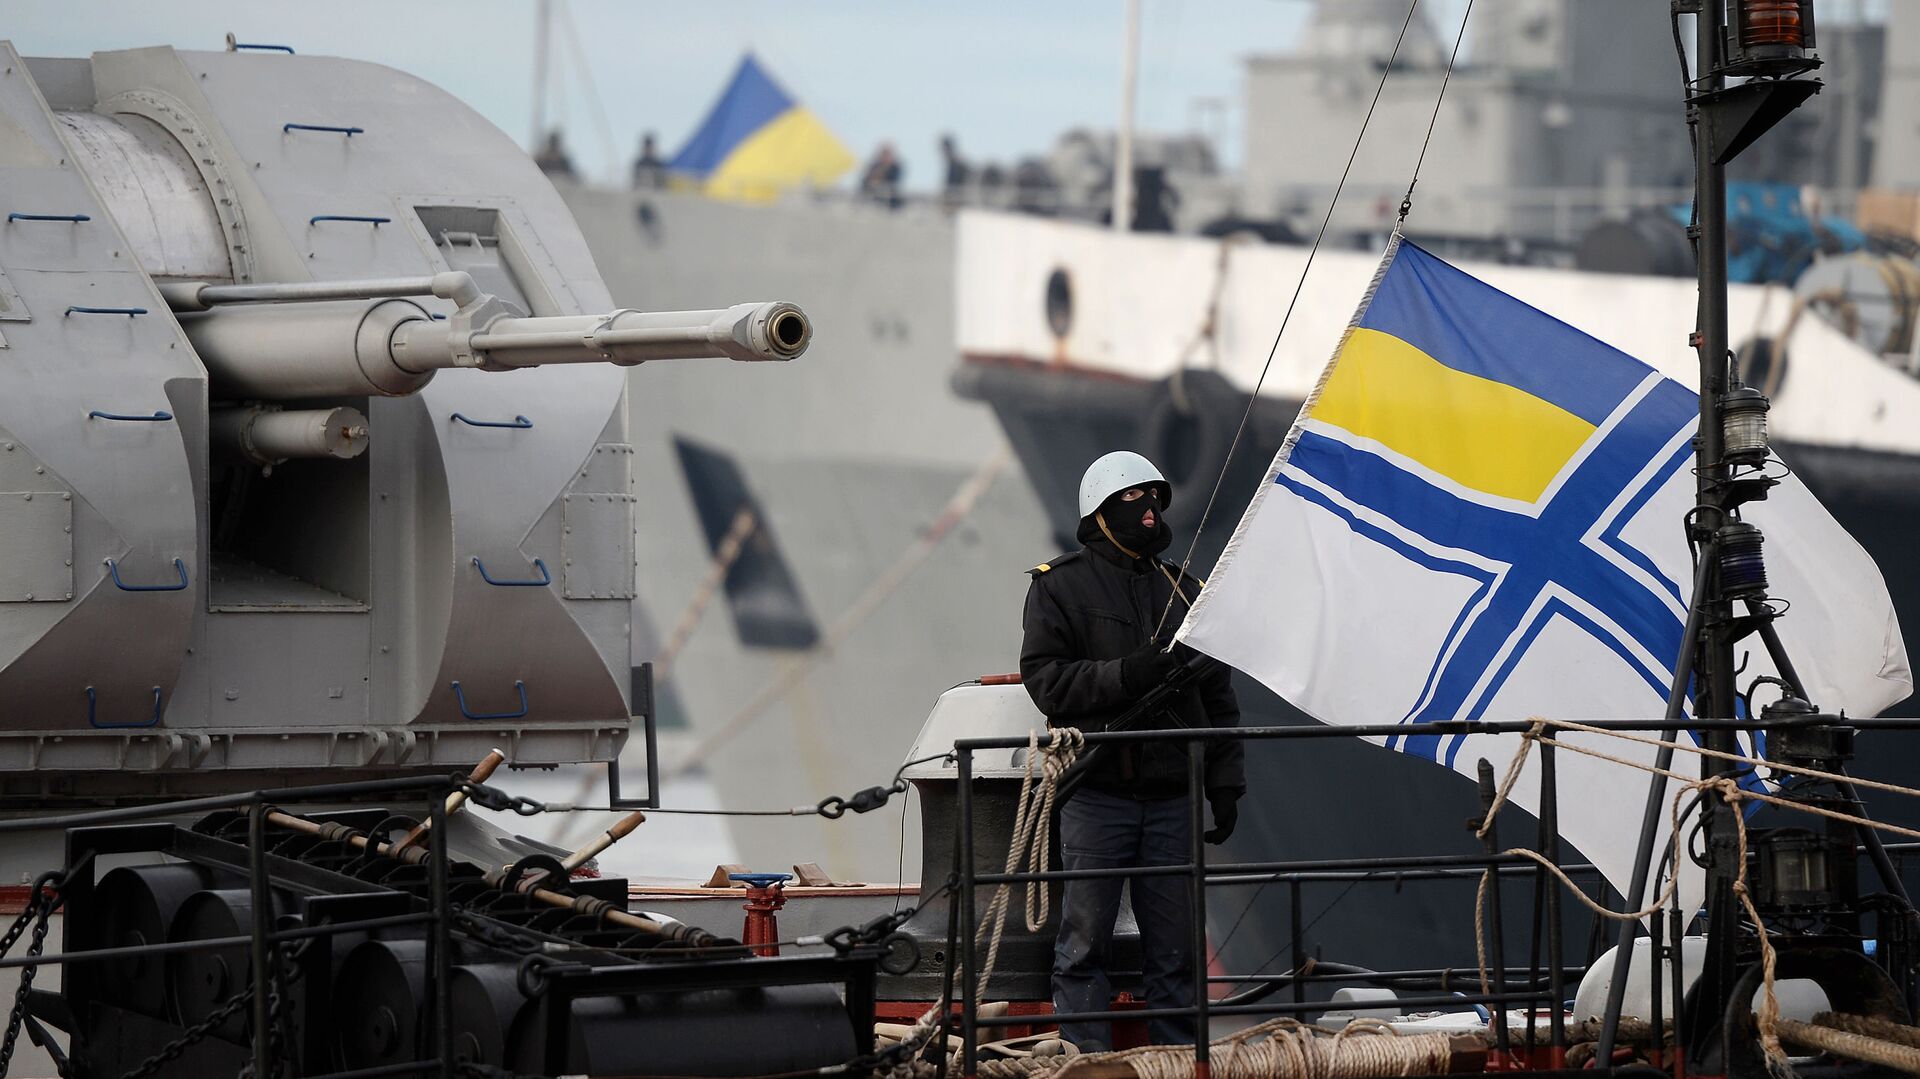 Украинский солдат поднимает флаг украинского военно-морского флота, стоя на страже на борту военного корабля - Sputnik Таджикистан, 1920, 08.04.2021